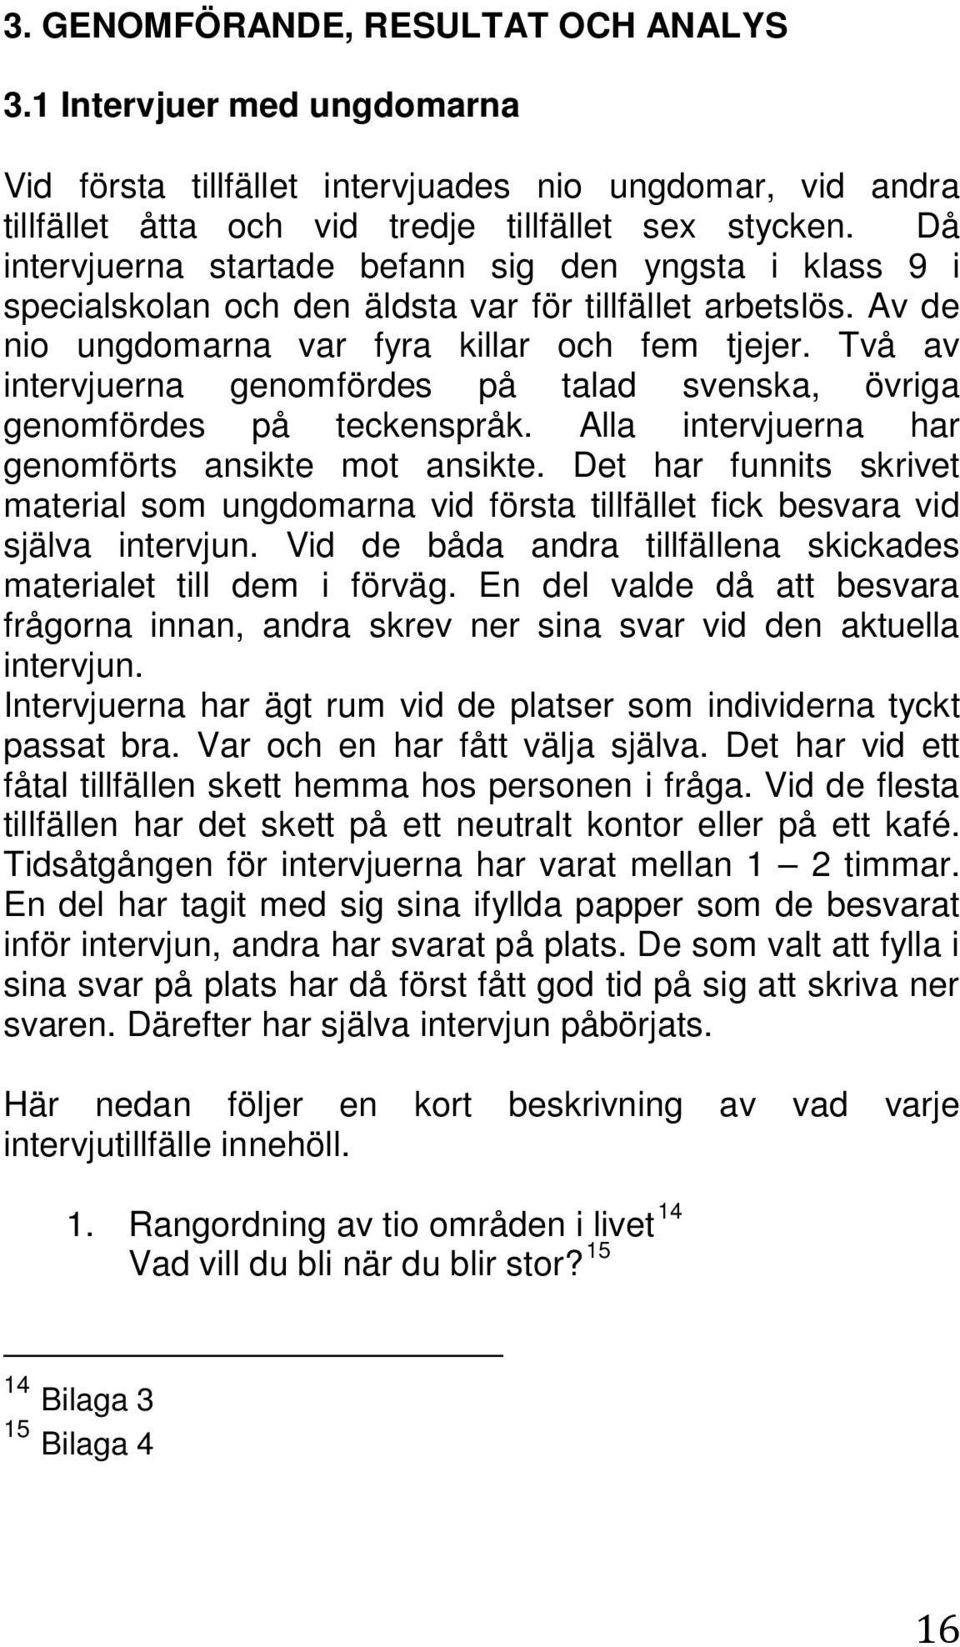 Två av intervjuerna genomfördes på talad svenska, övriga genomfördes på teckenspråk. Alla intervjuerna har genomförts ansikte mot ansikte.